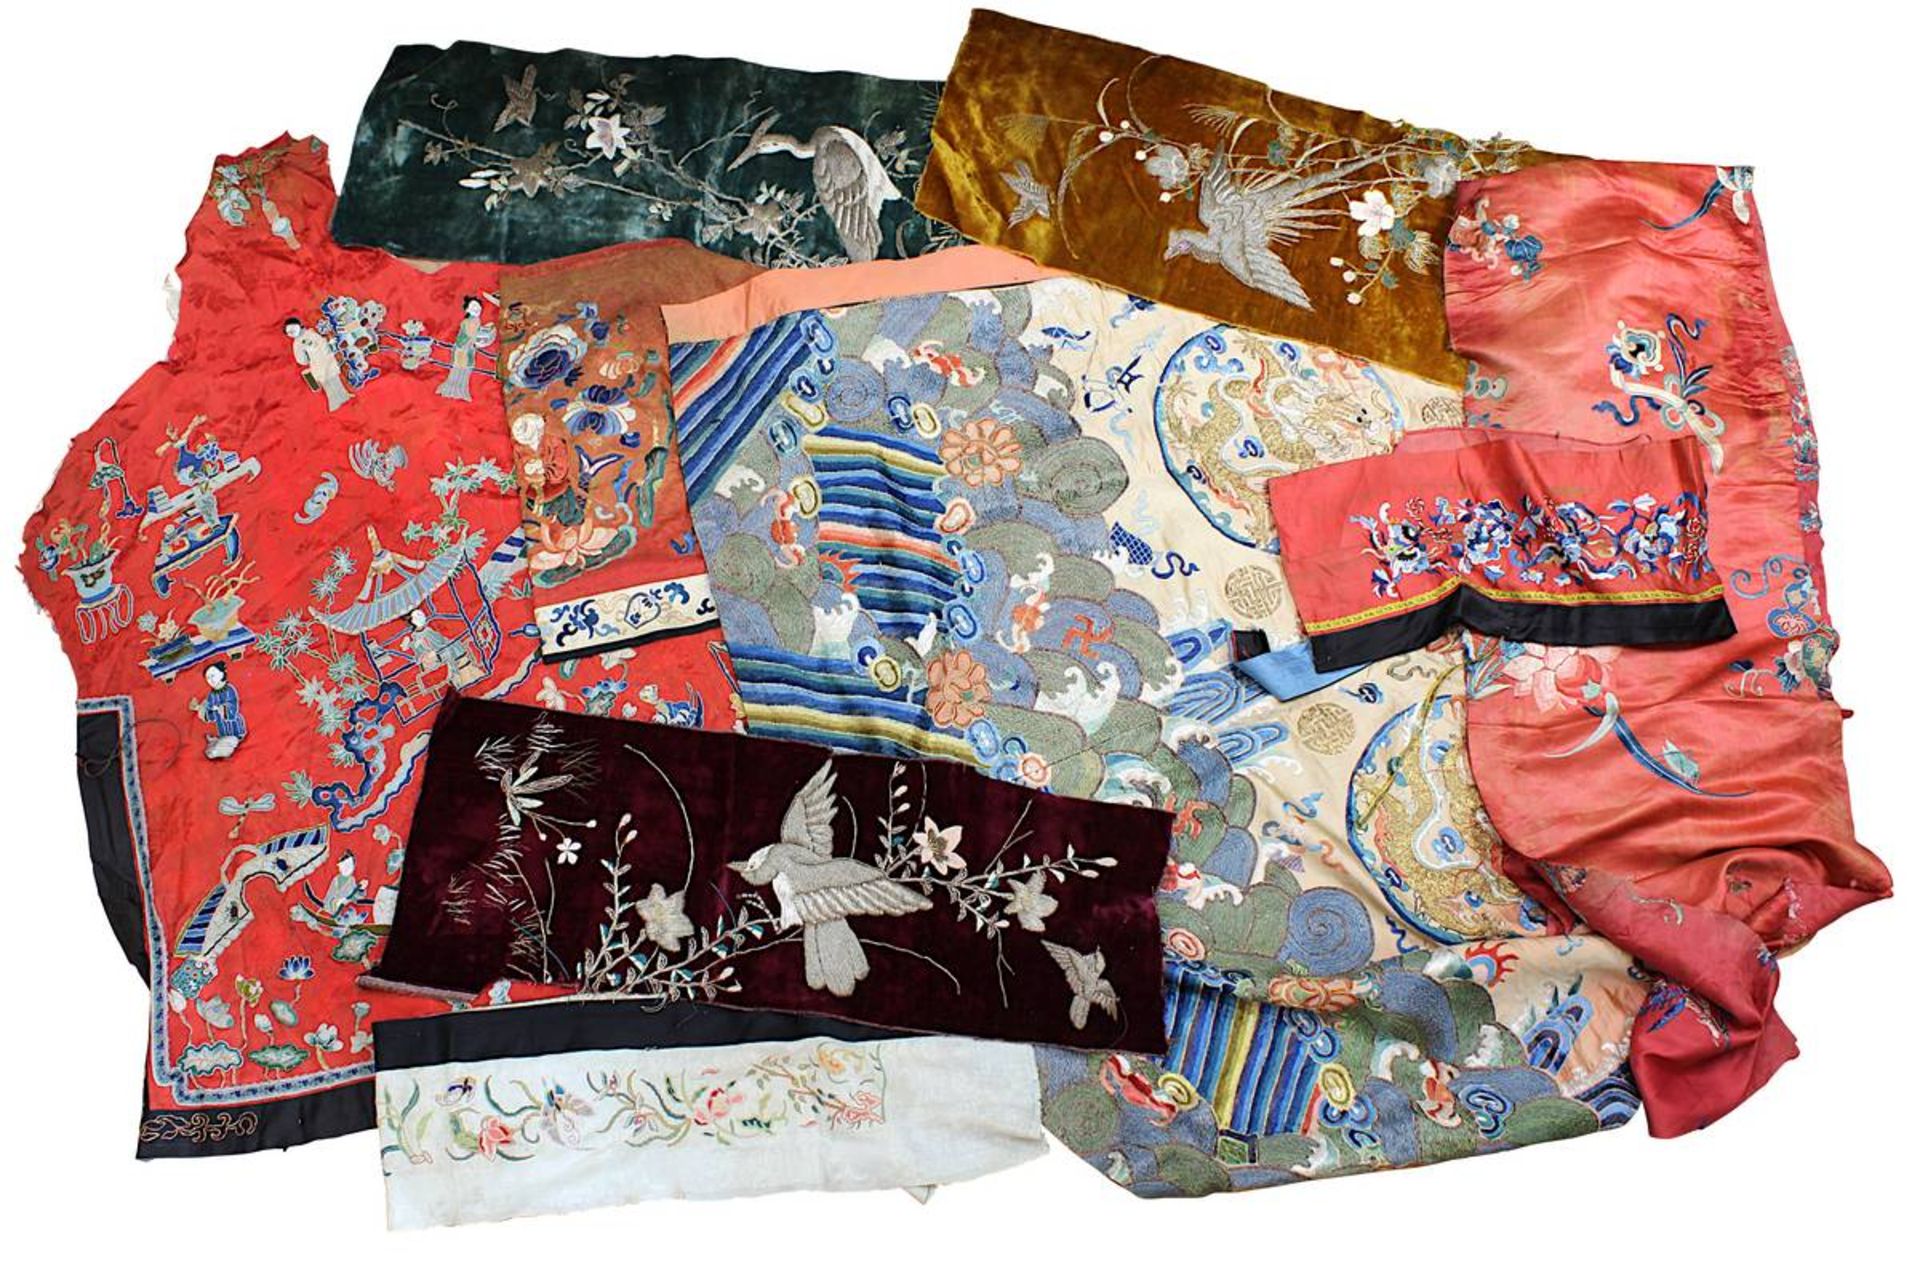 9 bestickte Textilfragmente, meist chinesische Seide, um 1900, bestehend aus: 6 Fragmente